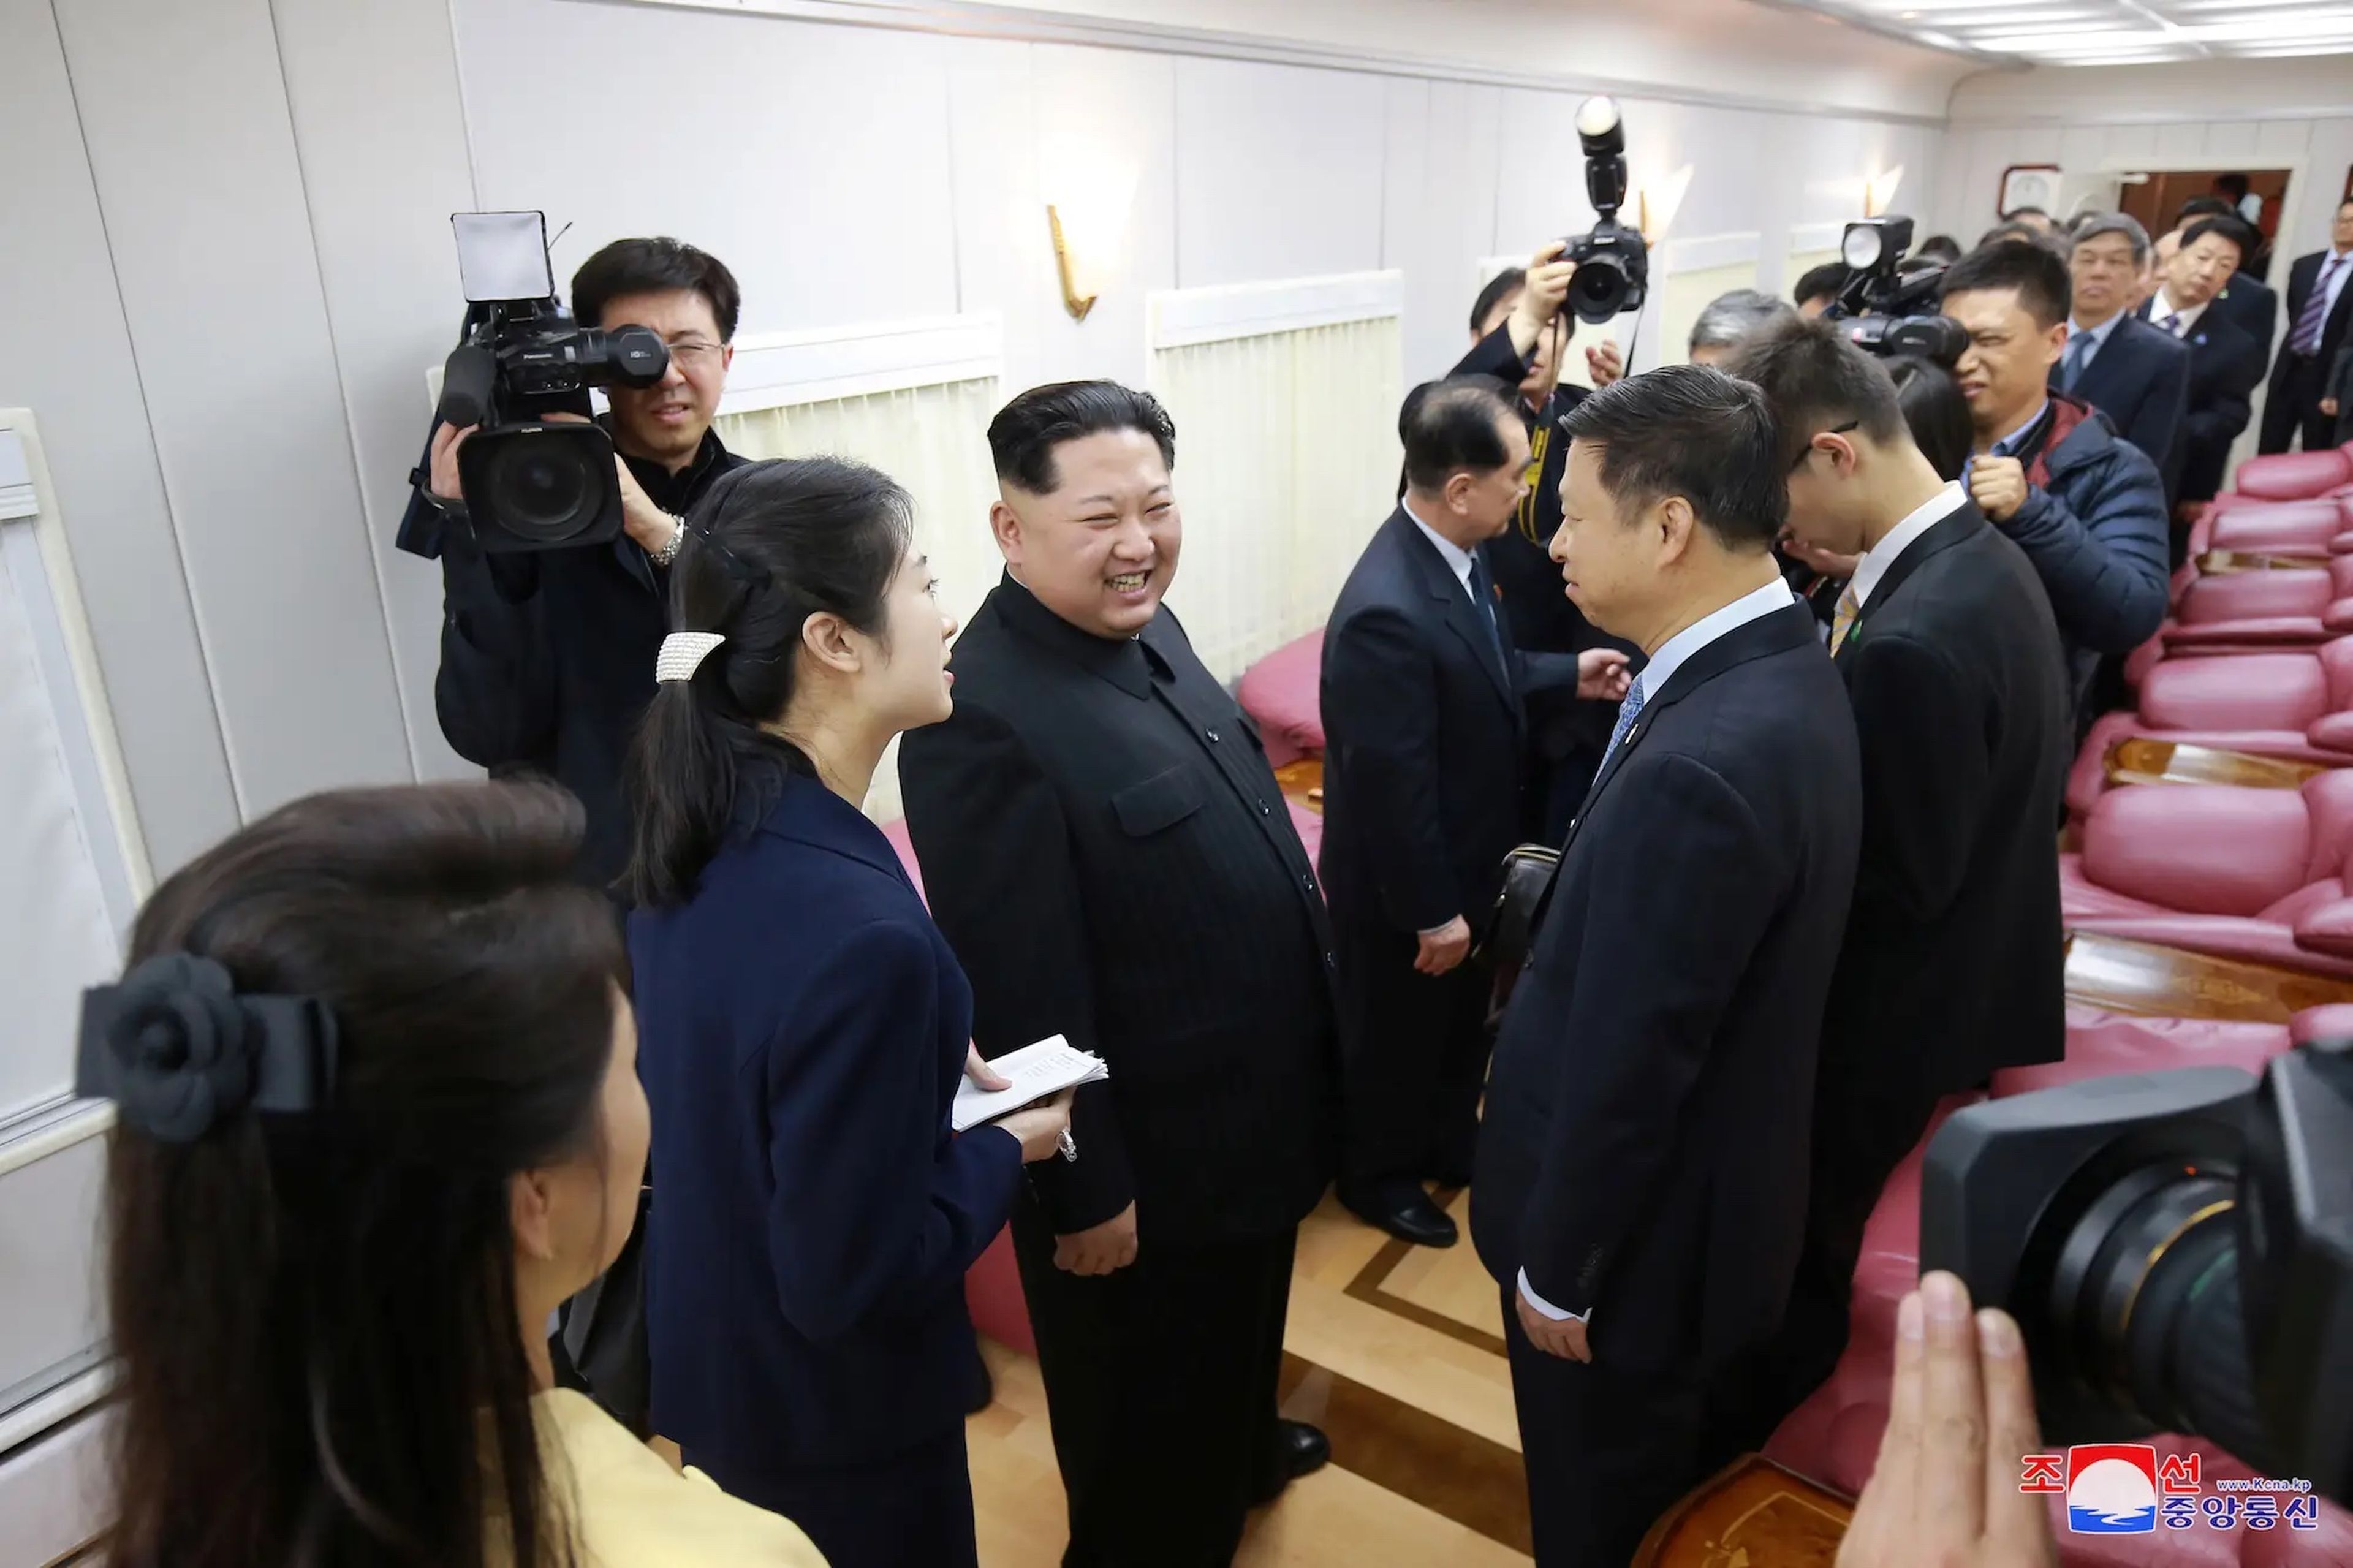 El líder norcoreano Kim Jong Un sonríe durante una visita no oficial a Pekín, China, en esta foto sin fecha difundida por la Agencia Central de Noticias de Corea del Norte (KCNA) en Pyongyang el 28 de marzo de 2018.